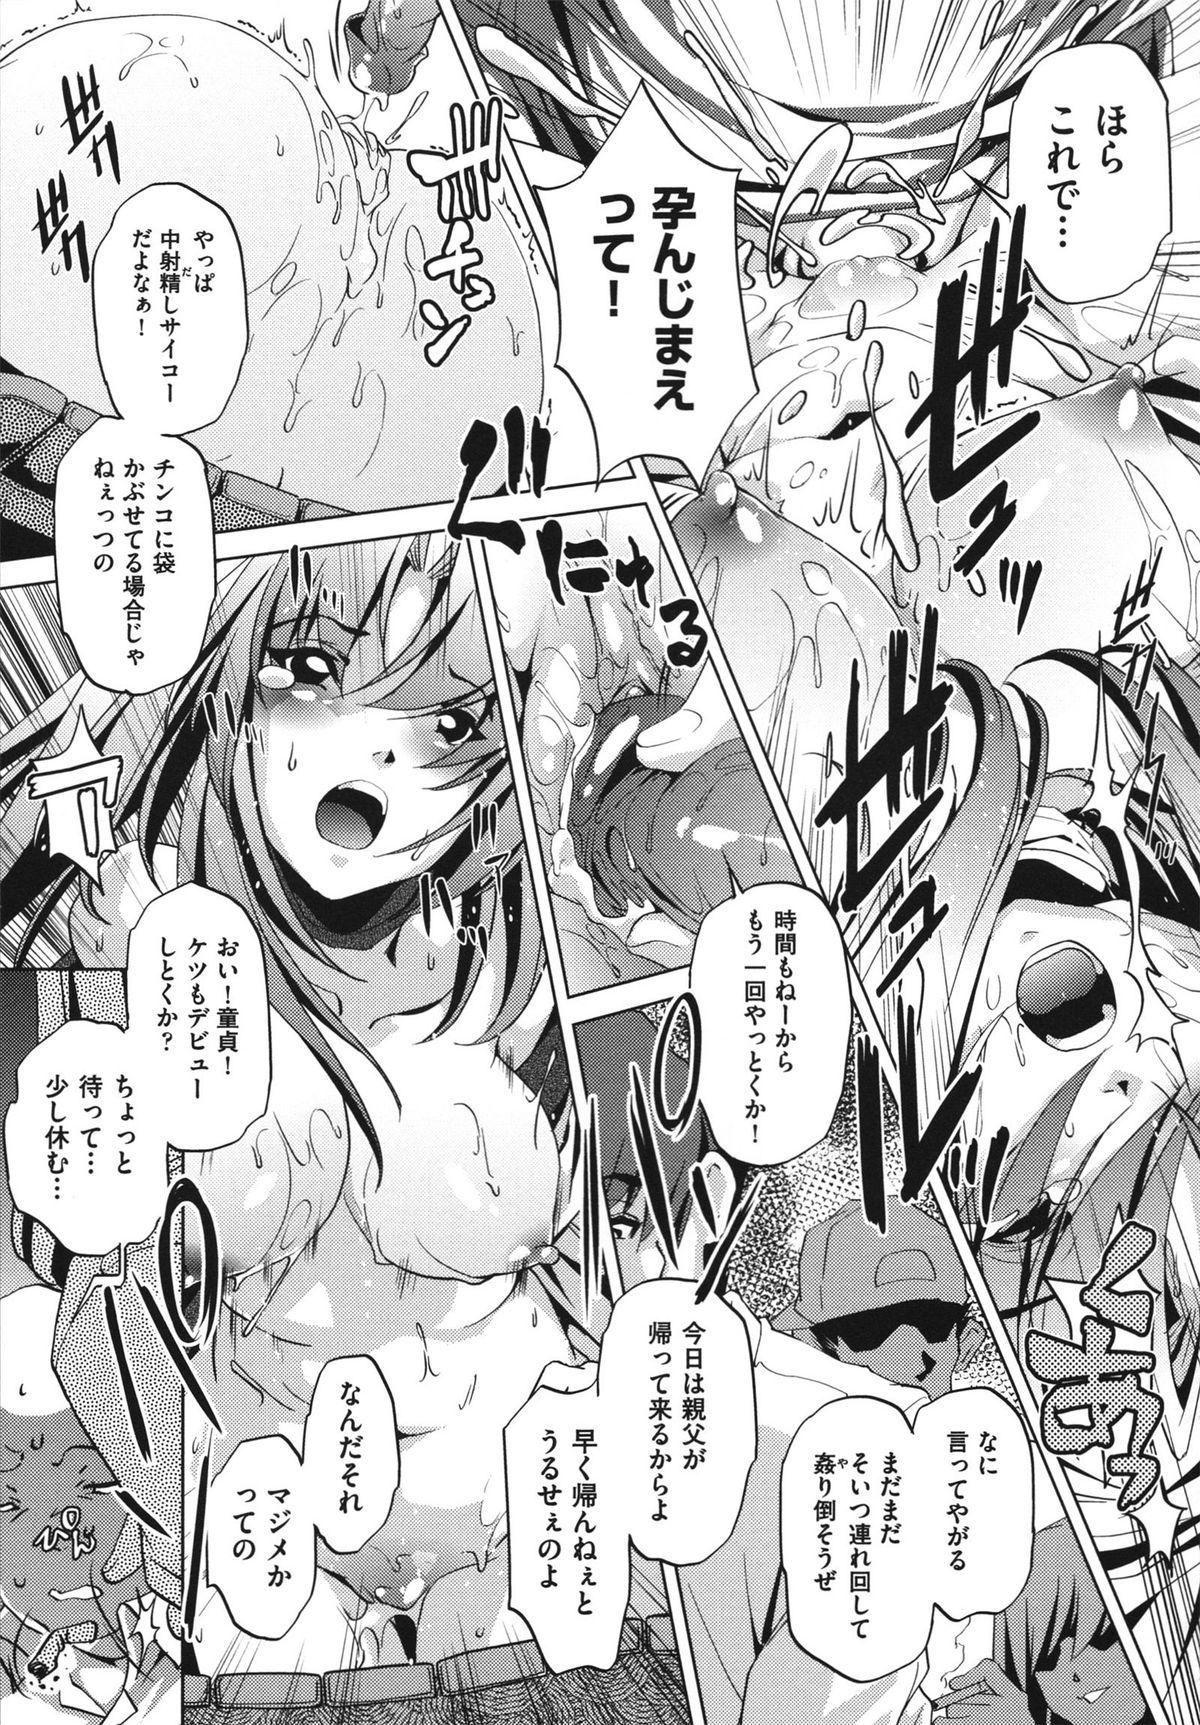 [Ootori Ryuuji] Shokushu wa Yawarakana Chibusa ni Makitsuki Onna-tachi no Ana wo Kakimidasu - Feeler coils around a soft breast and violates women's hole. 18